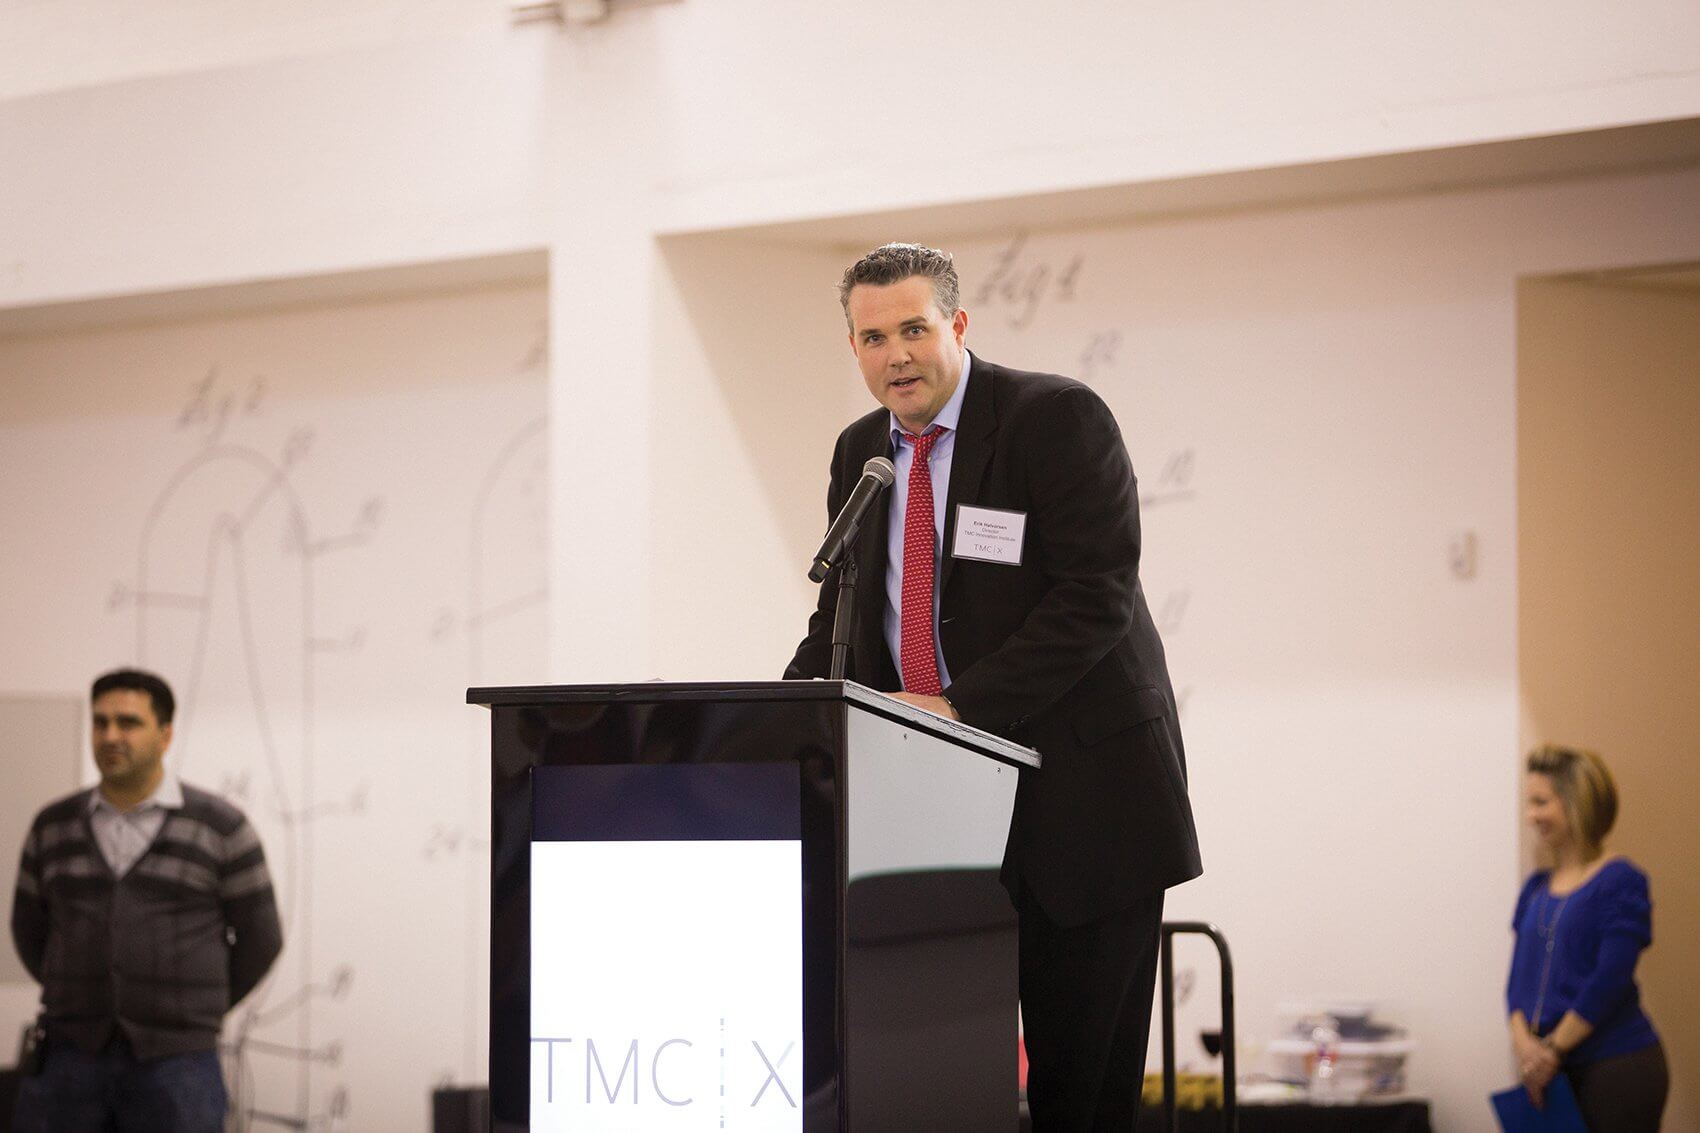 Erik M. Halvorsen, Ph.D., director of the TMC Innovation Institute